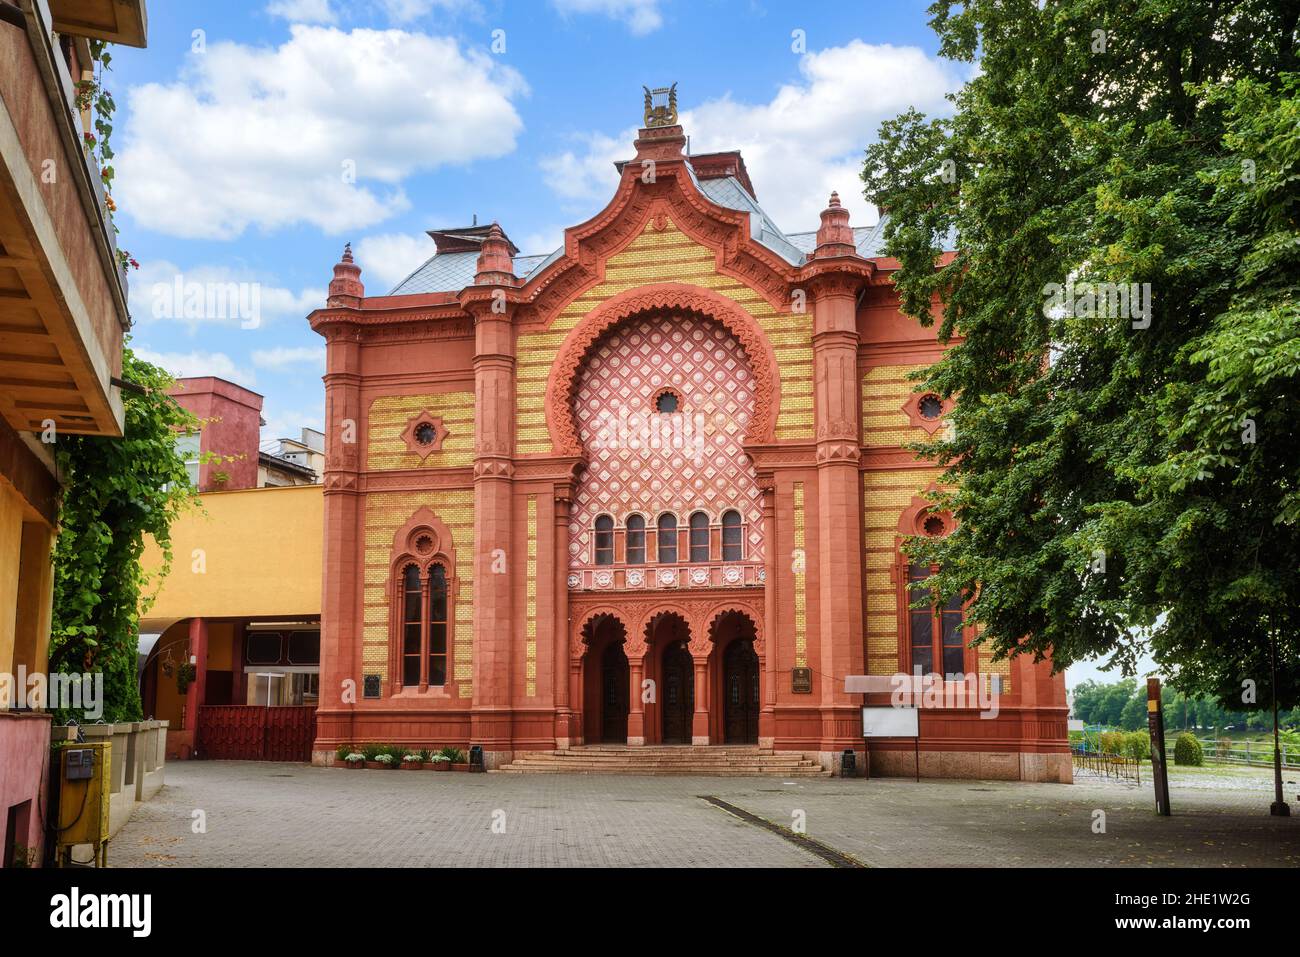 L'antico edificio della sinagoga è uno dei punti di riferimento principali nella città vecchia di Uzhgorod, nell'Ucraina occidentale Foto Stock